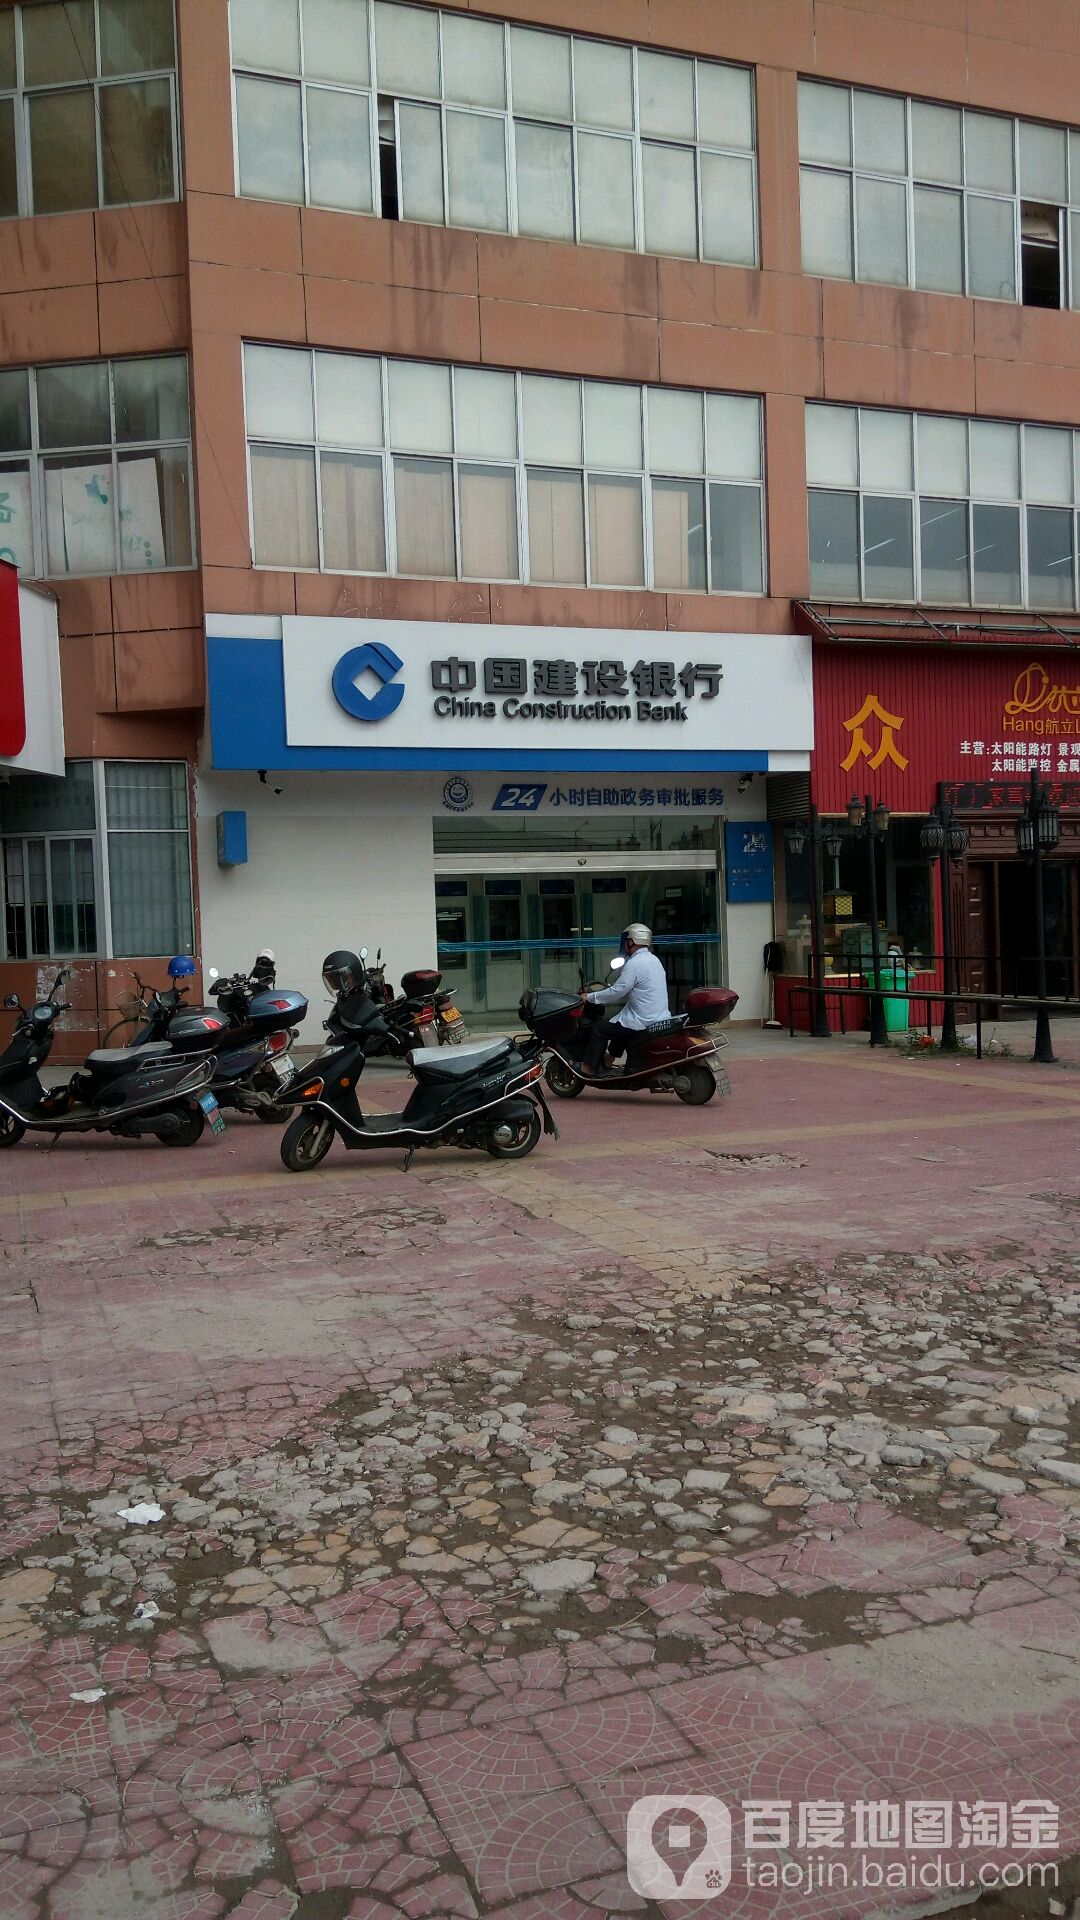 中國建設銀行24小時自助銀行